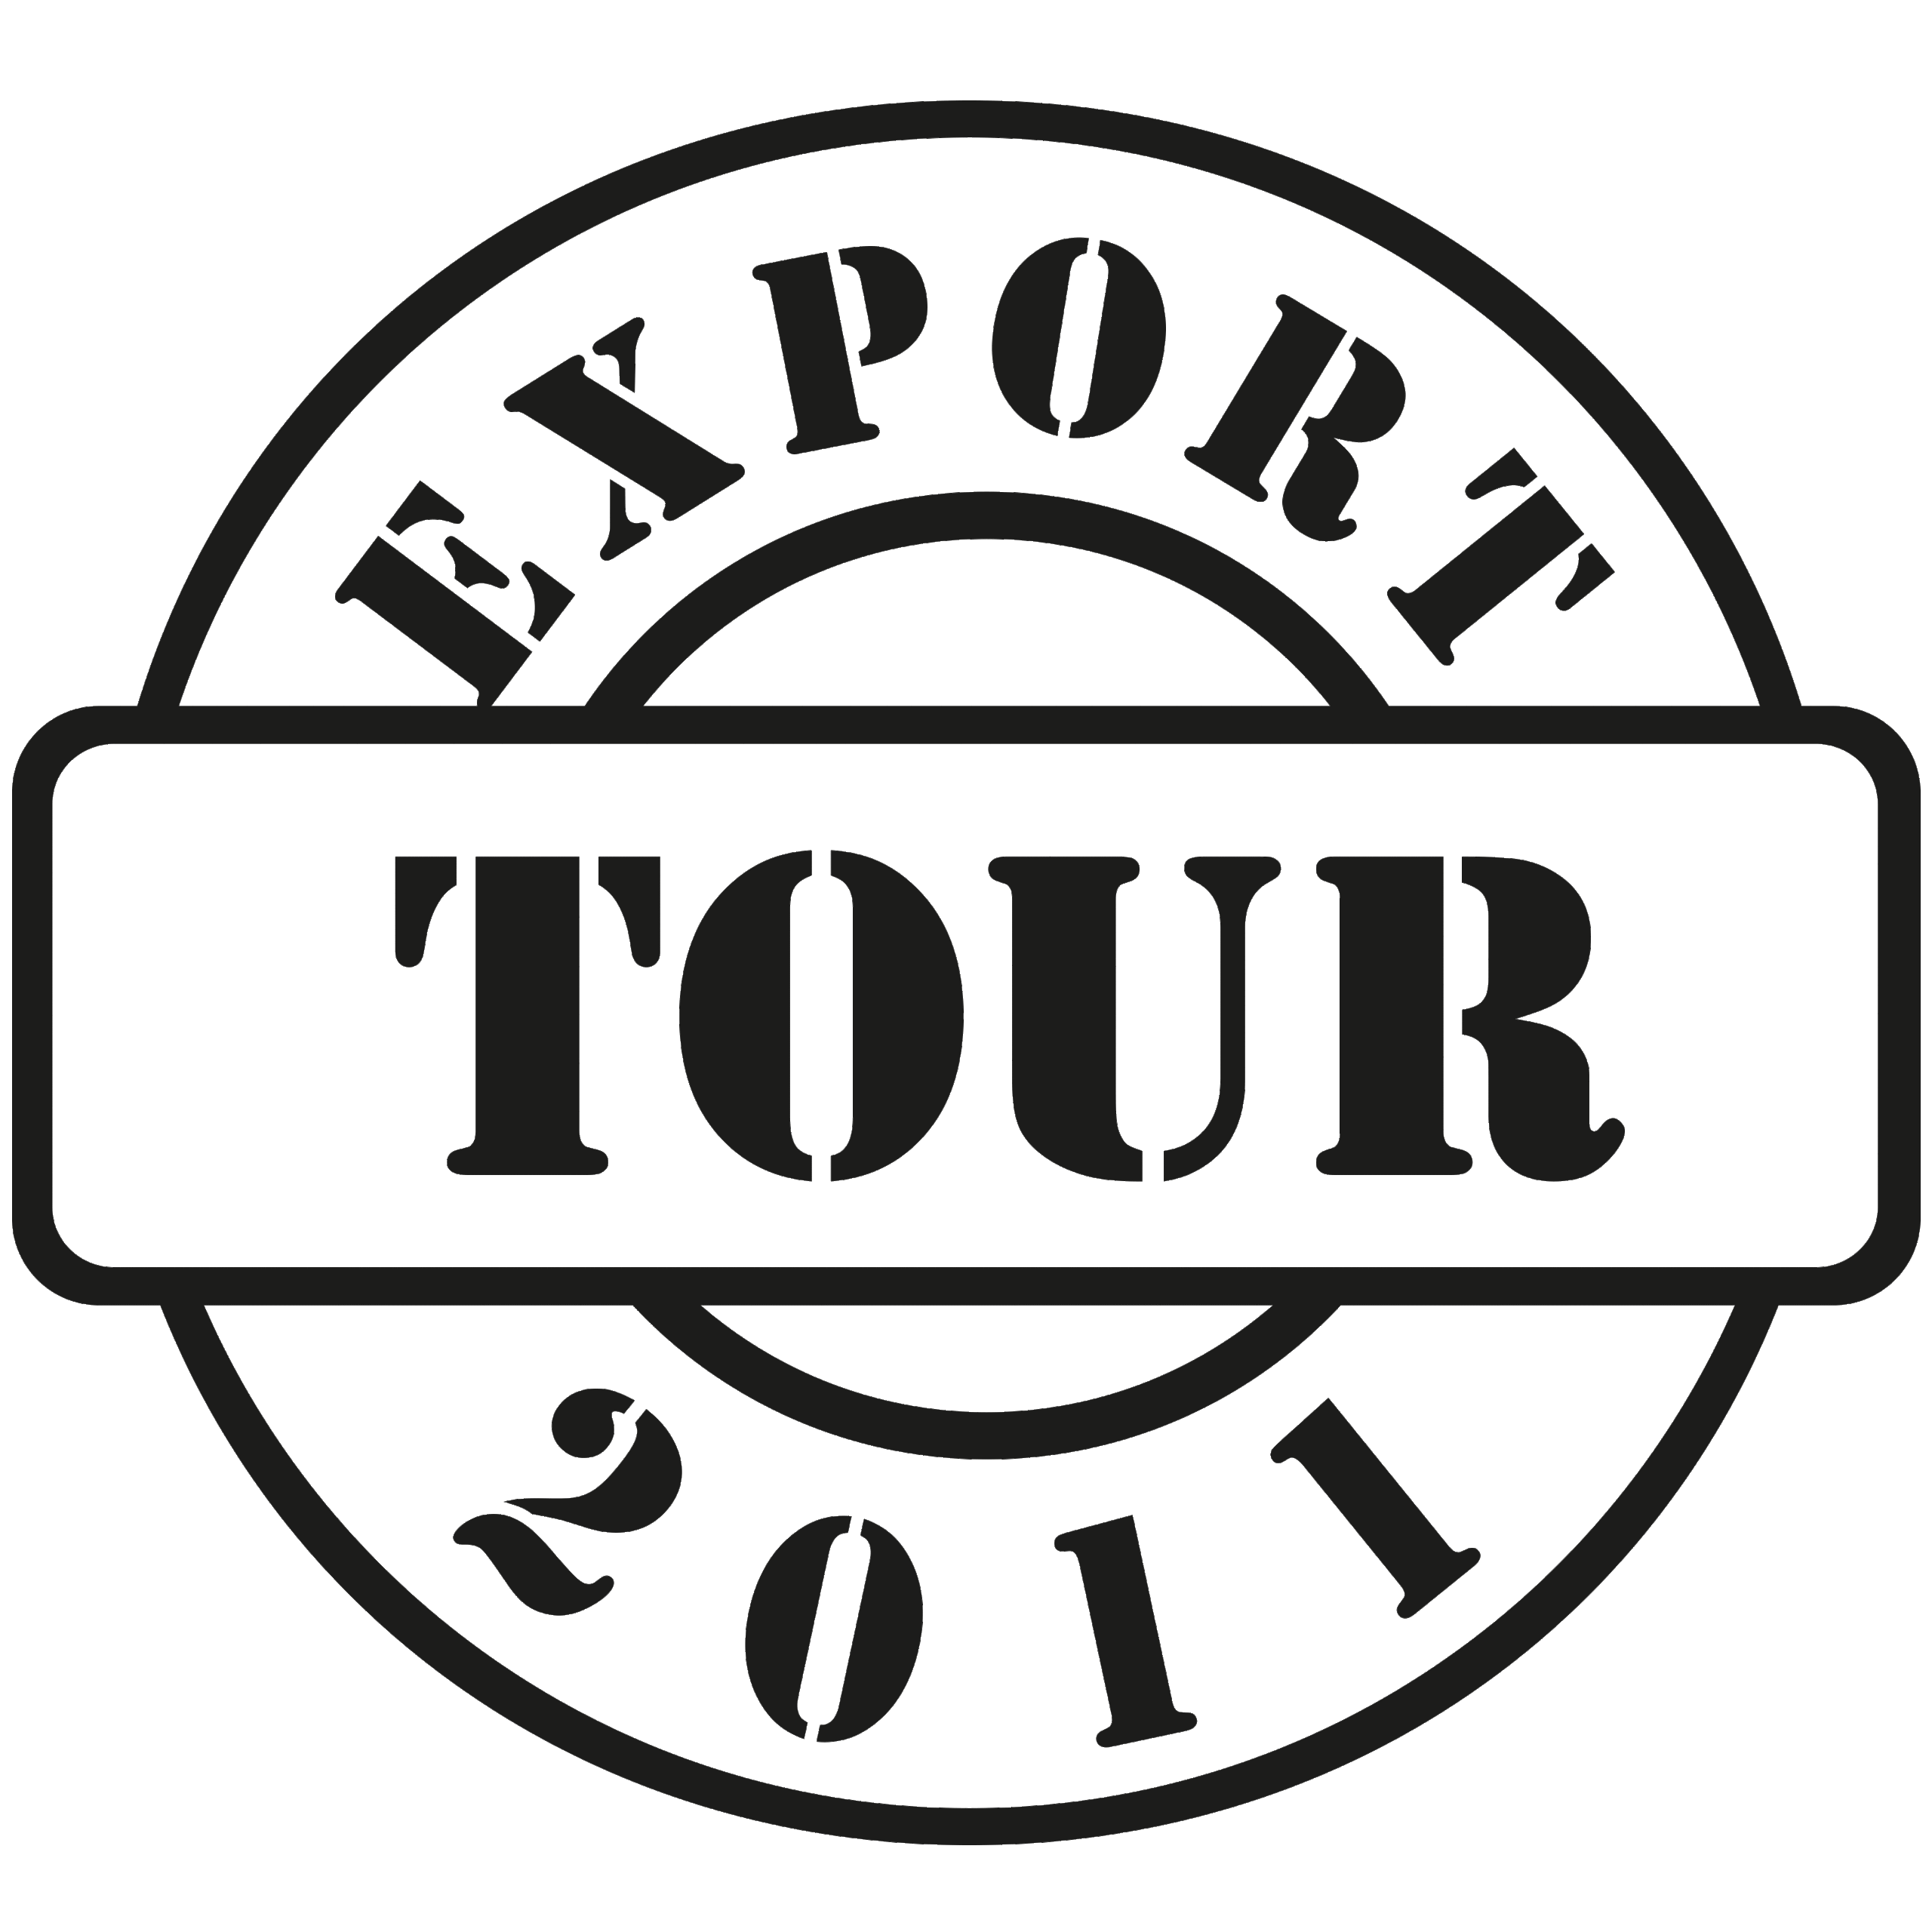 Export Tour 2011